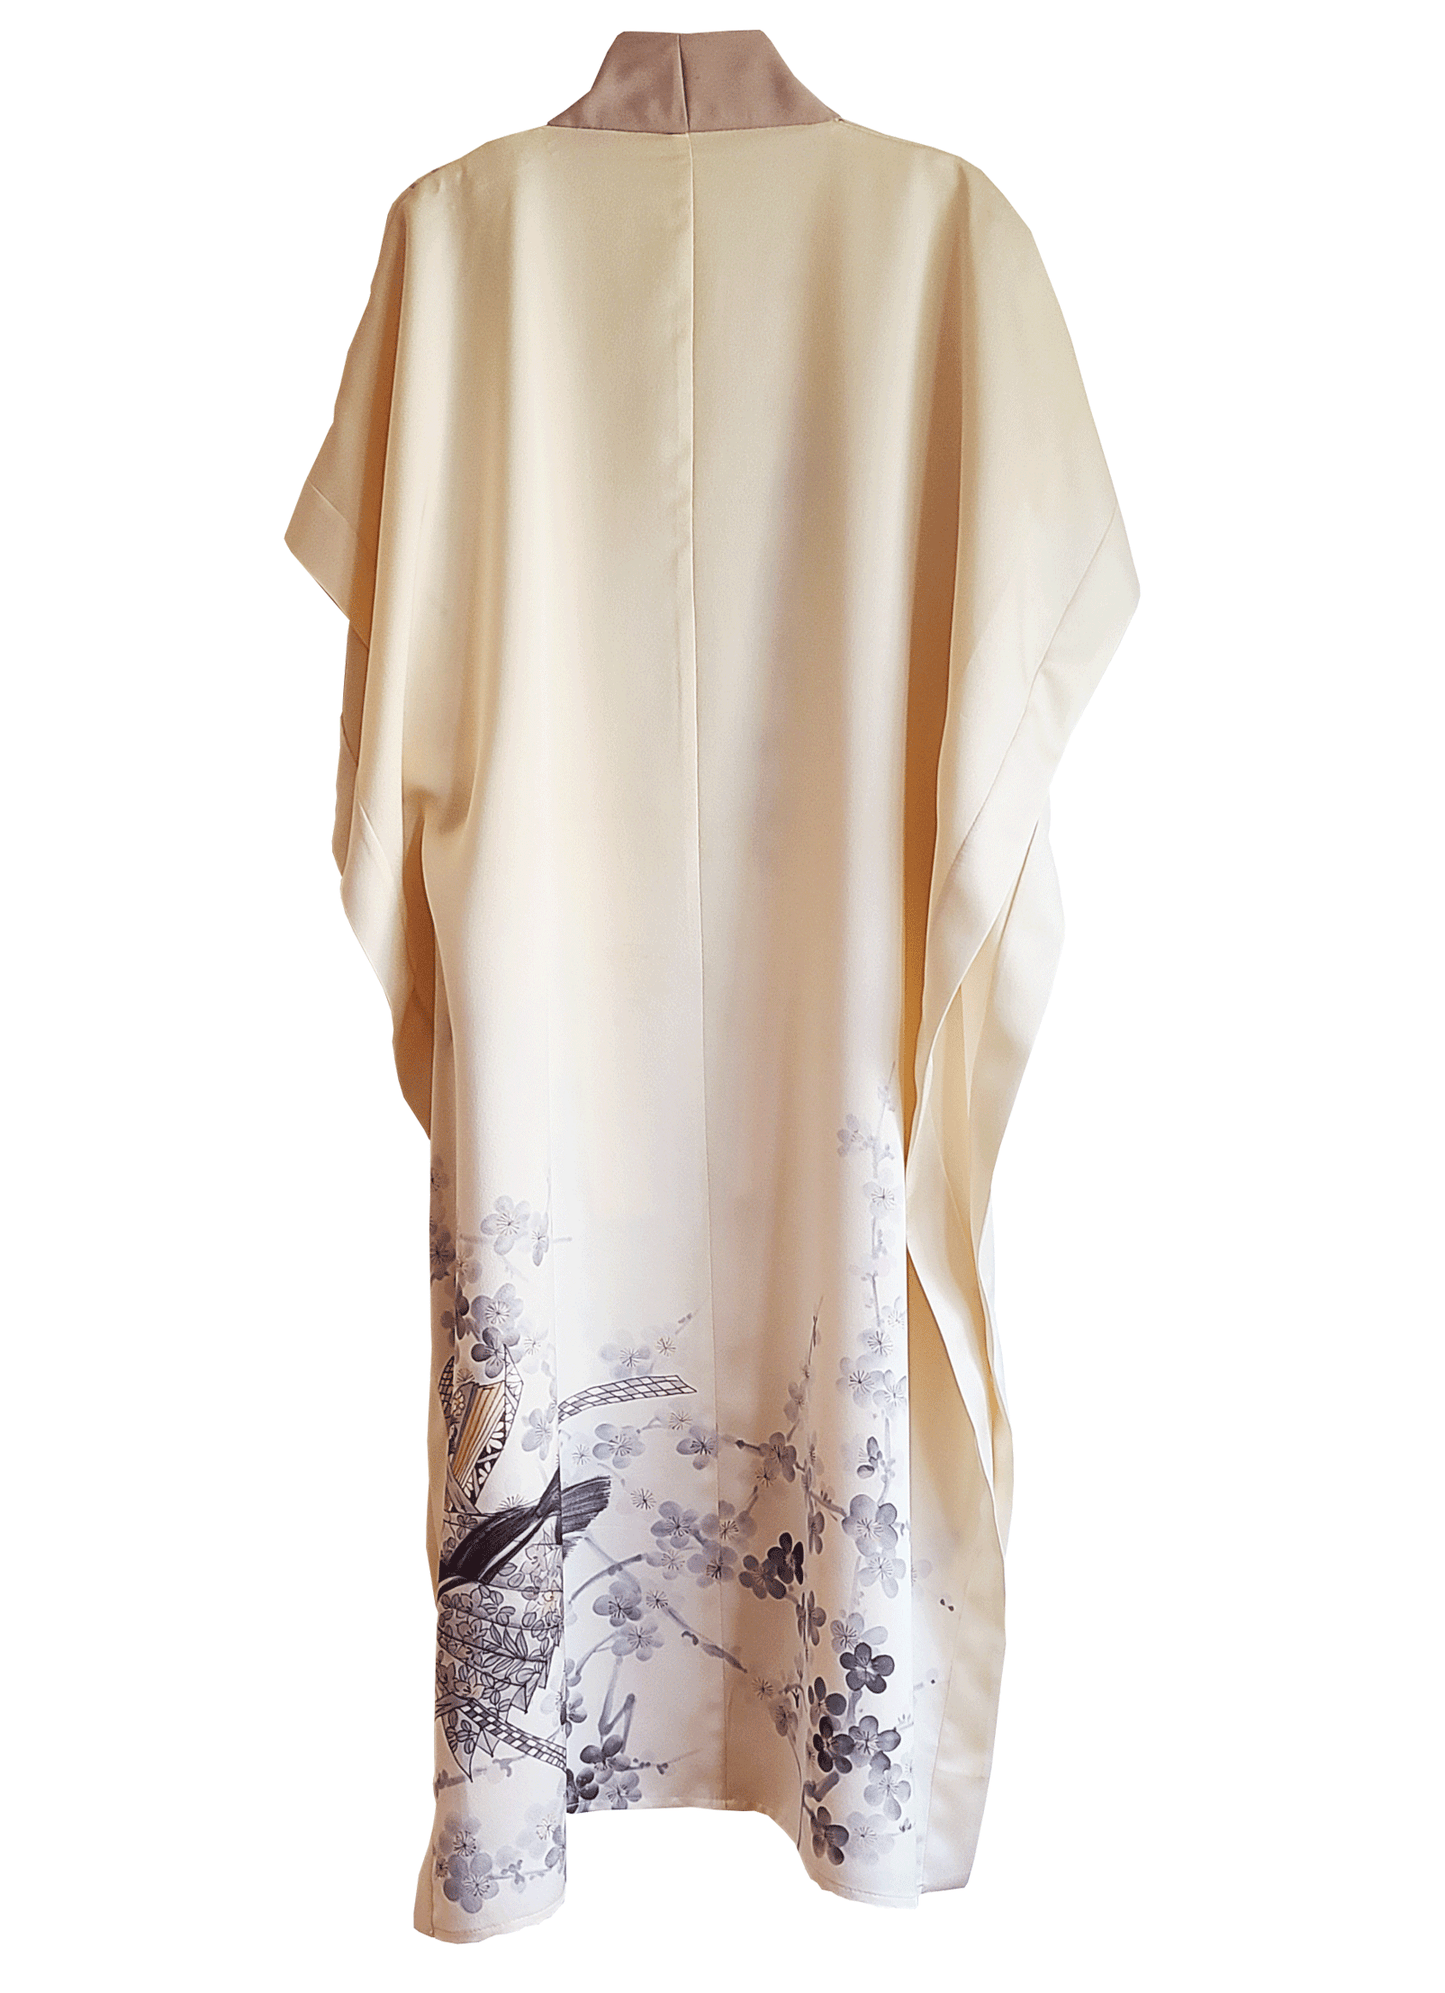 Kimono Duster Cover Up  S/M/L